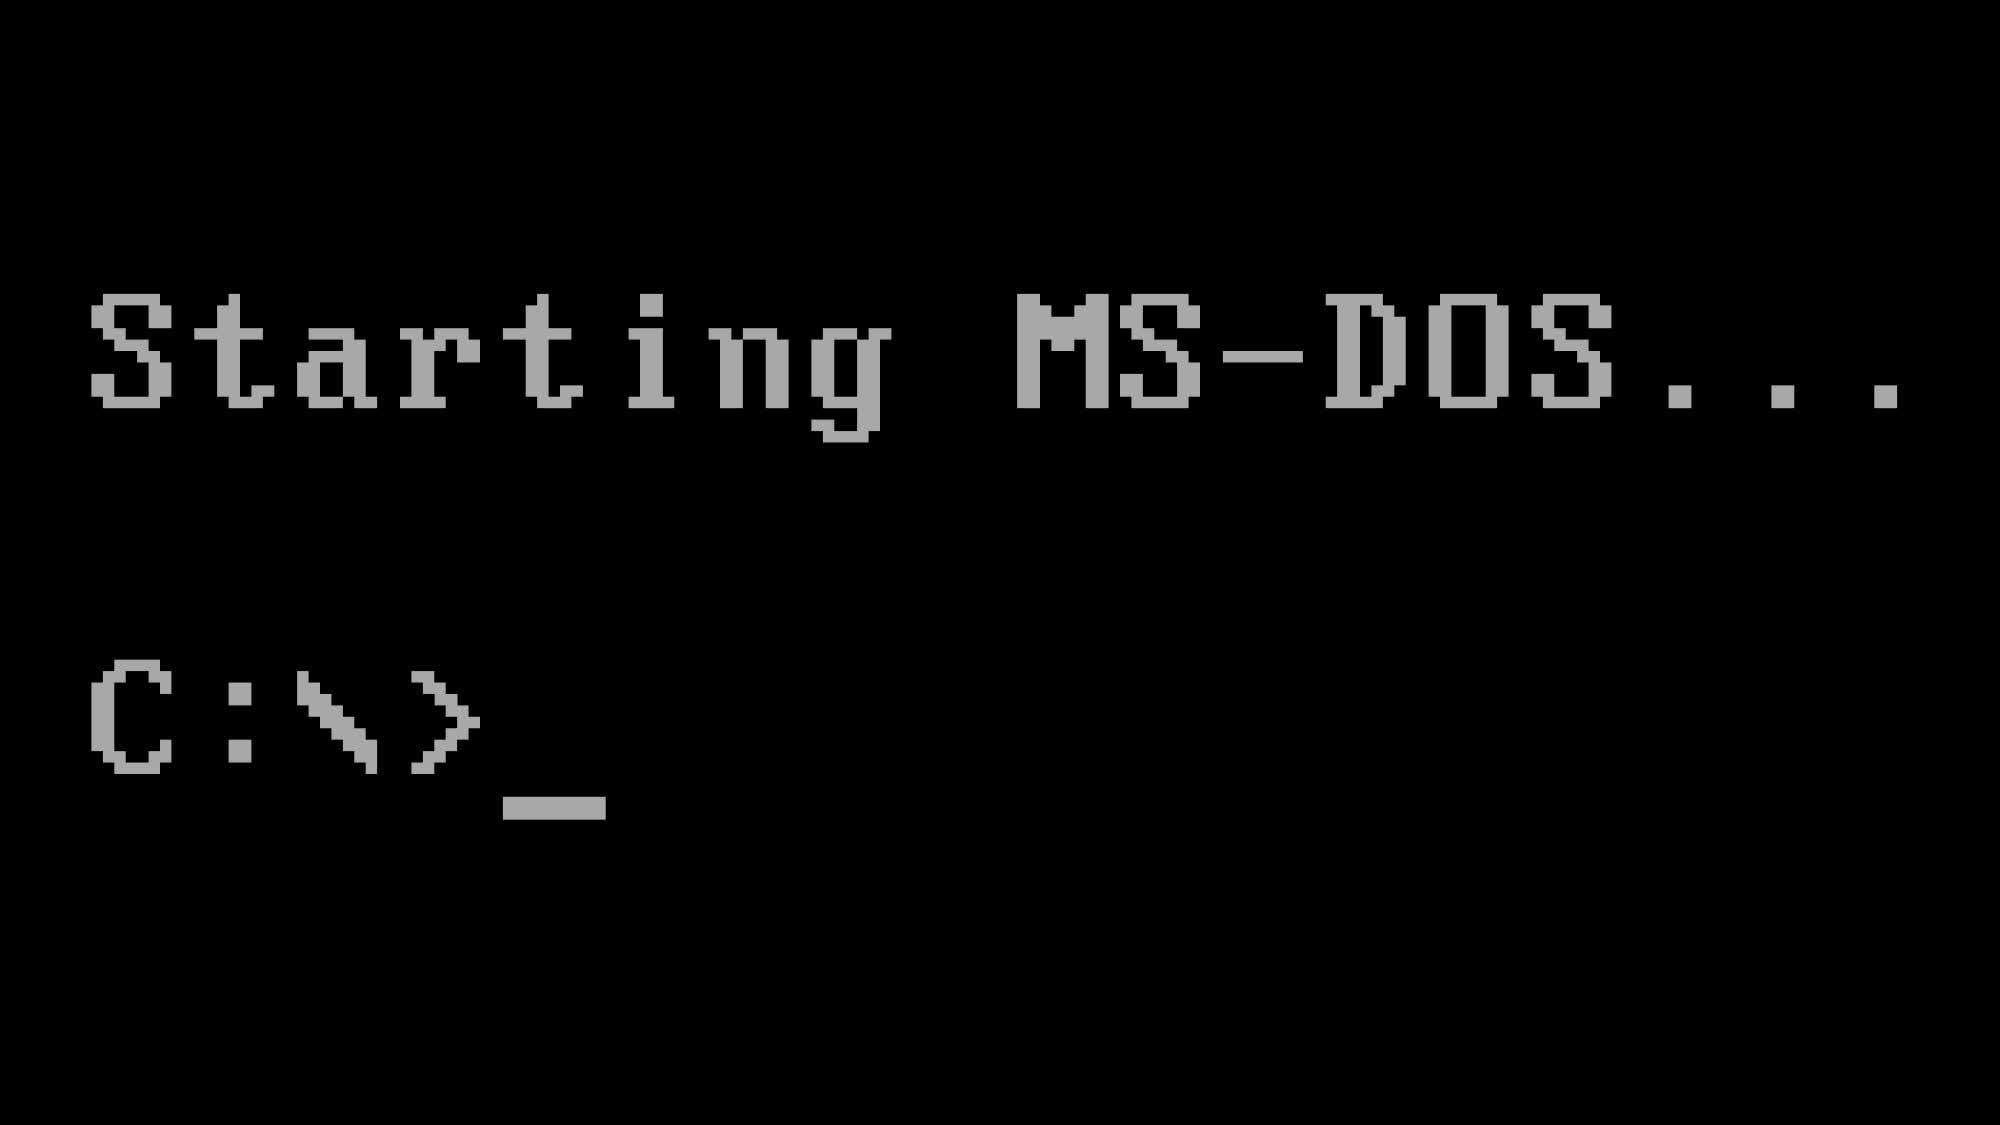 La versión más antigua del precursor de MS-DOS 86-DOS ya está disponible para descargar